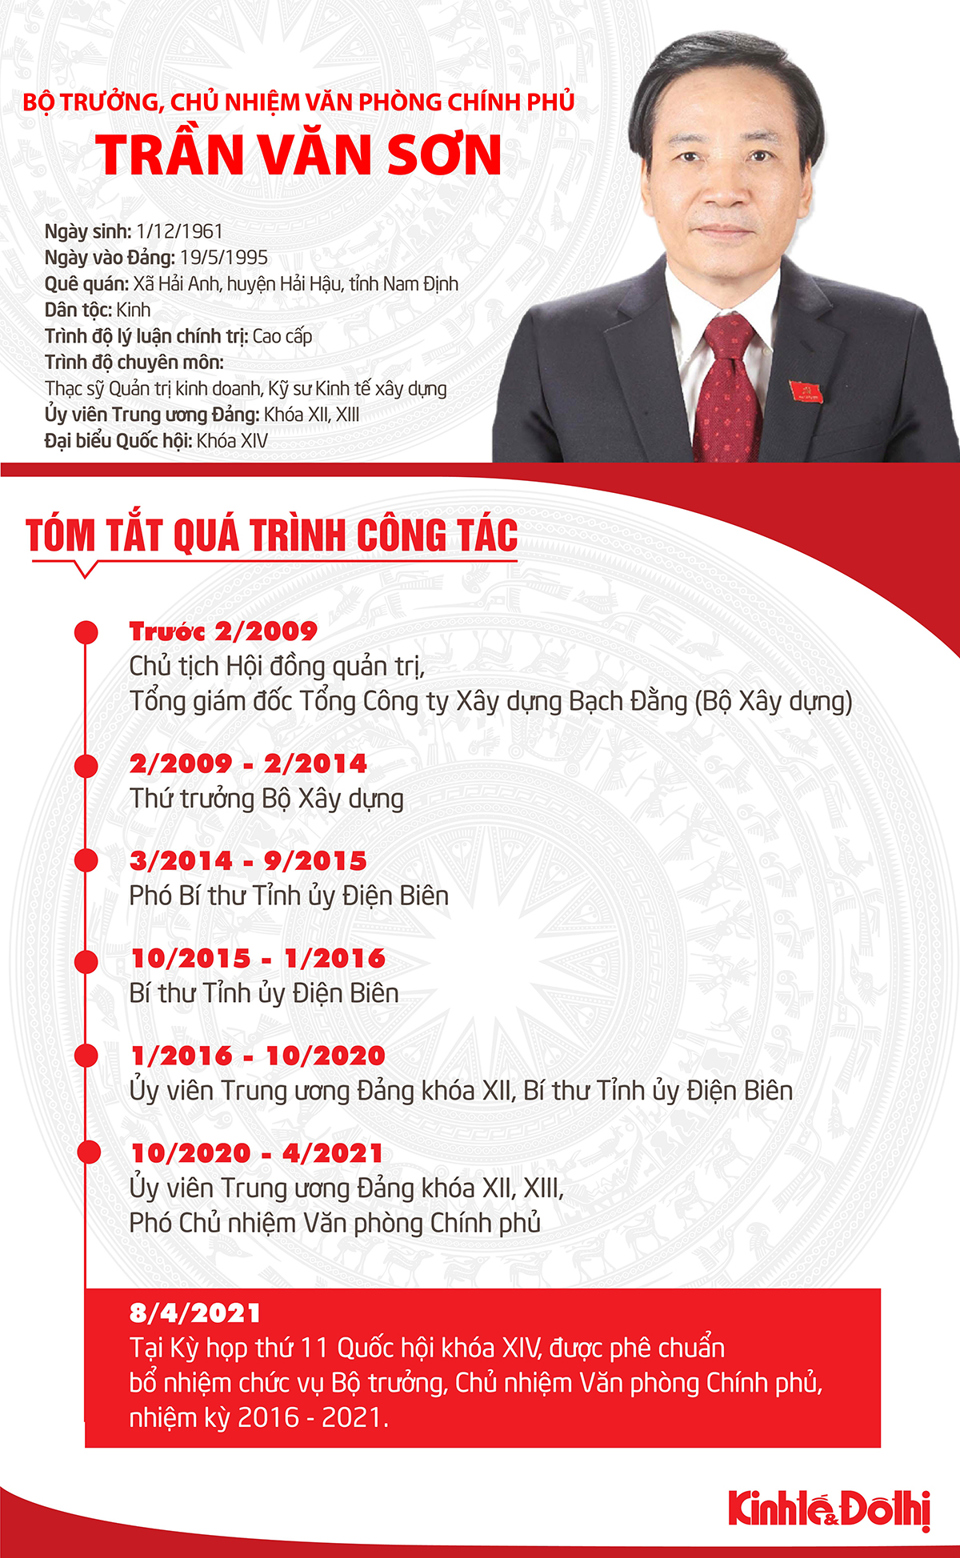 [Infographic] Chân dung tân Bộ trưởng, Chủ nhiệm Văn phòng Chính phủ Trần Văn Sơn - Ảnh 1